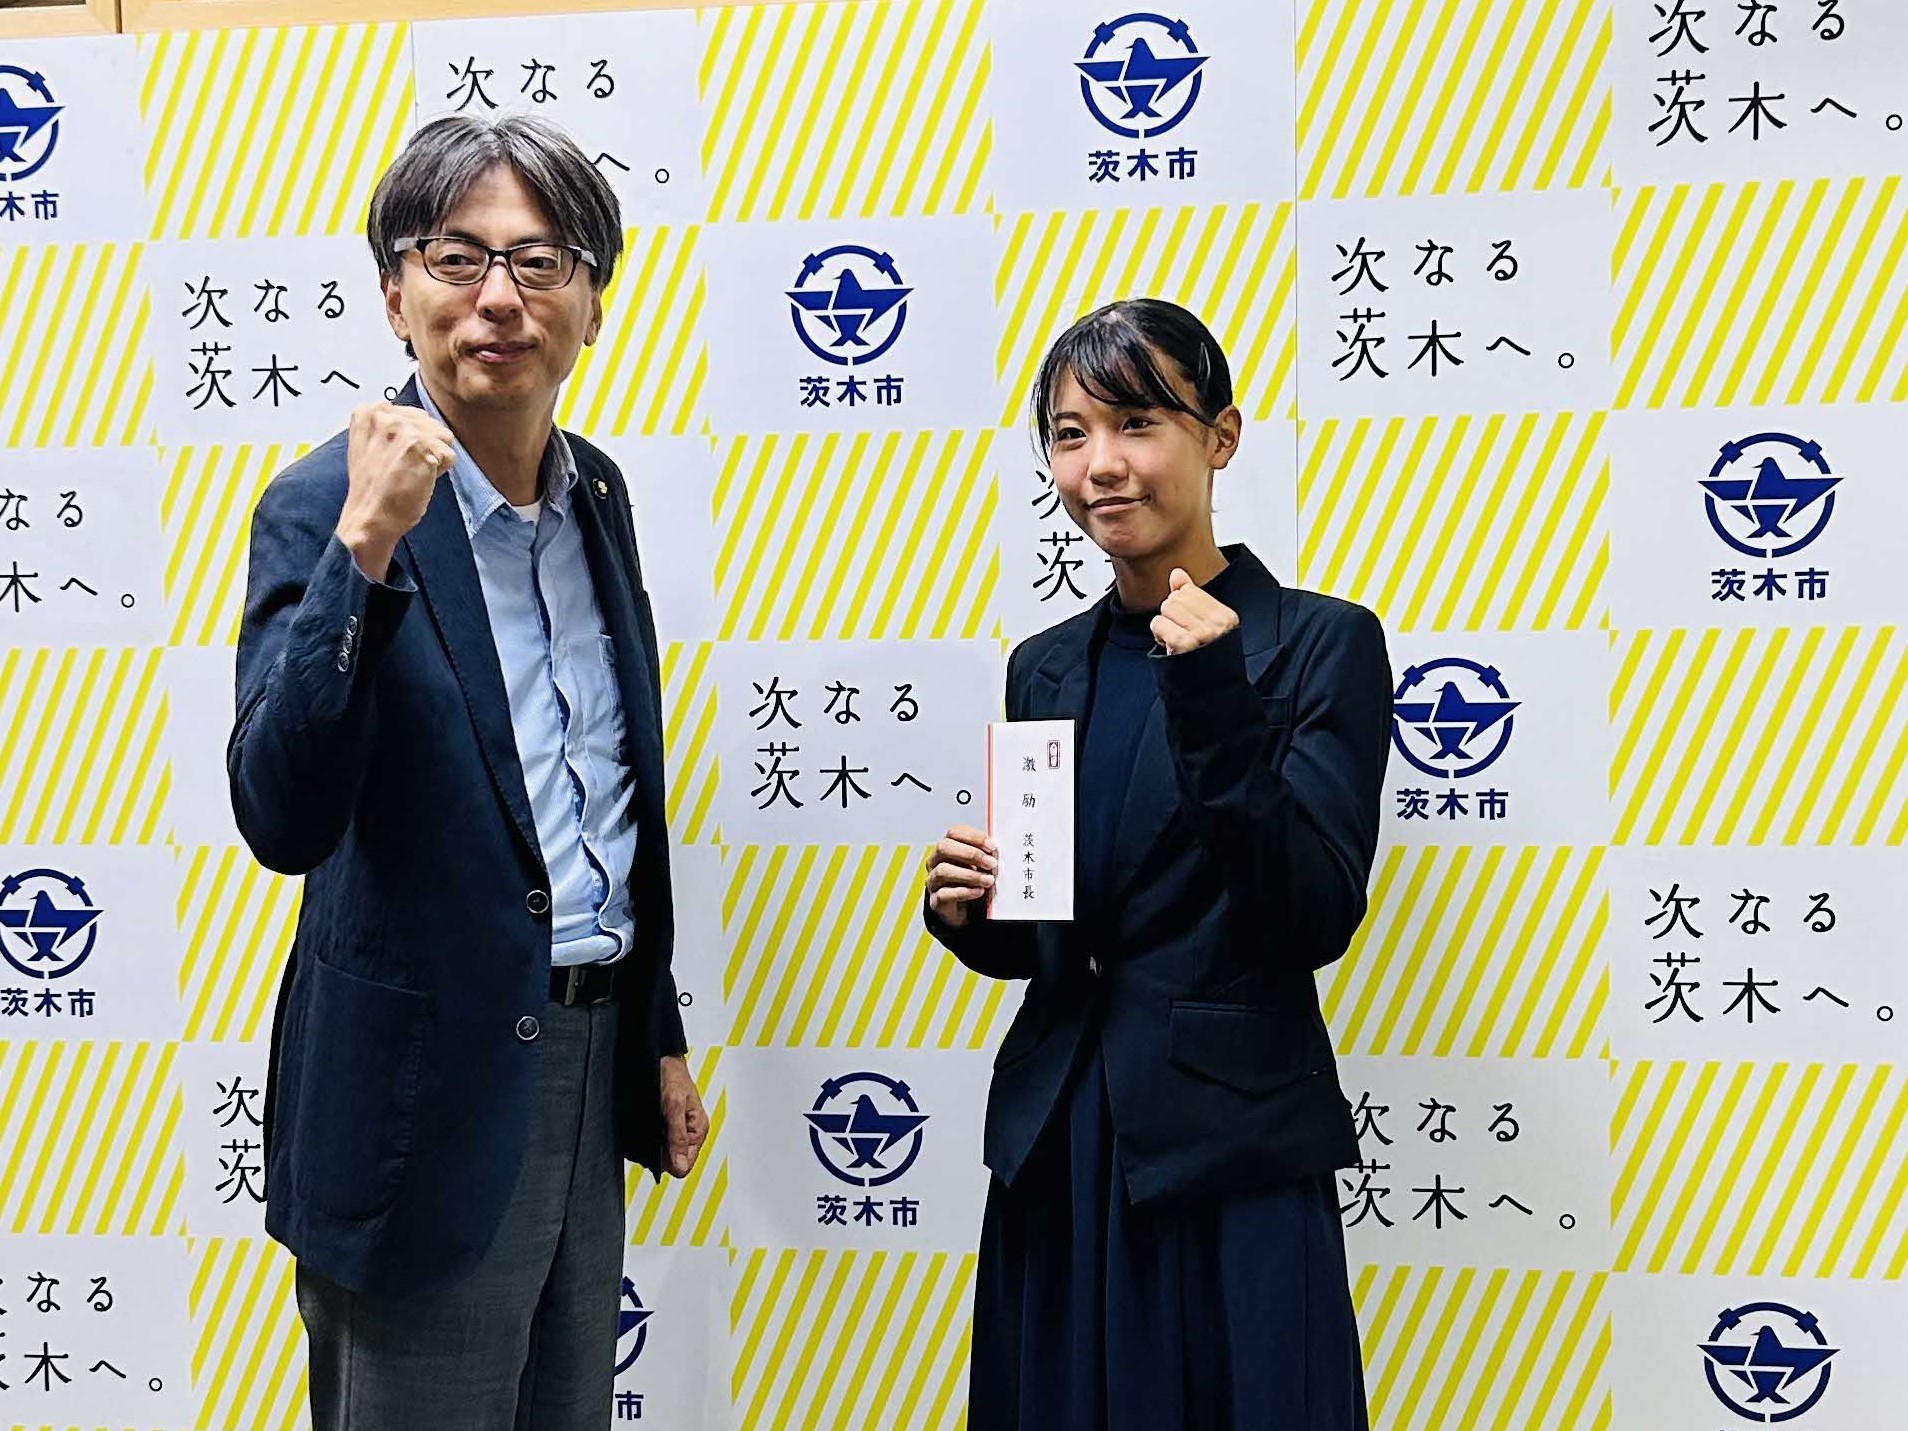 石倉結歌さんと市長の写真